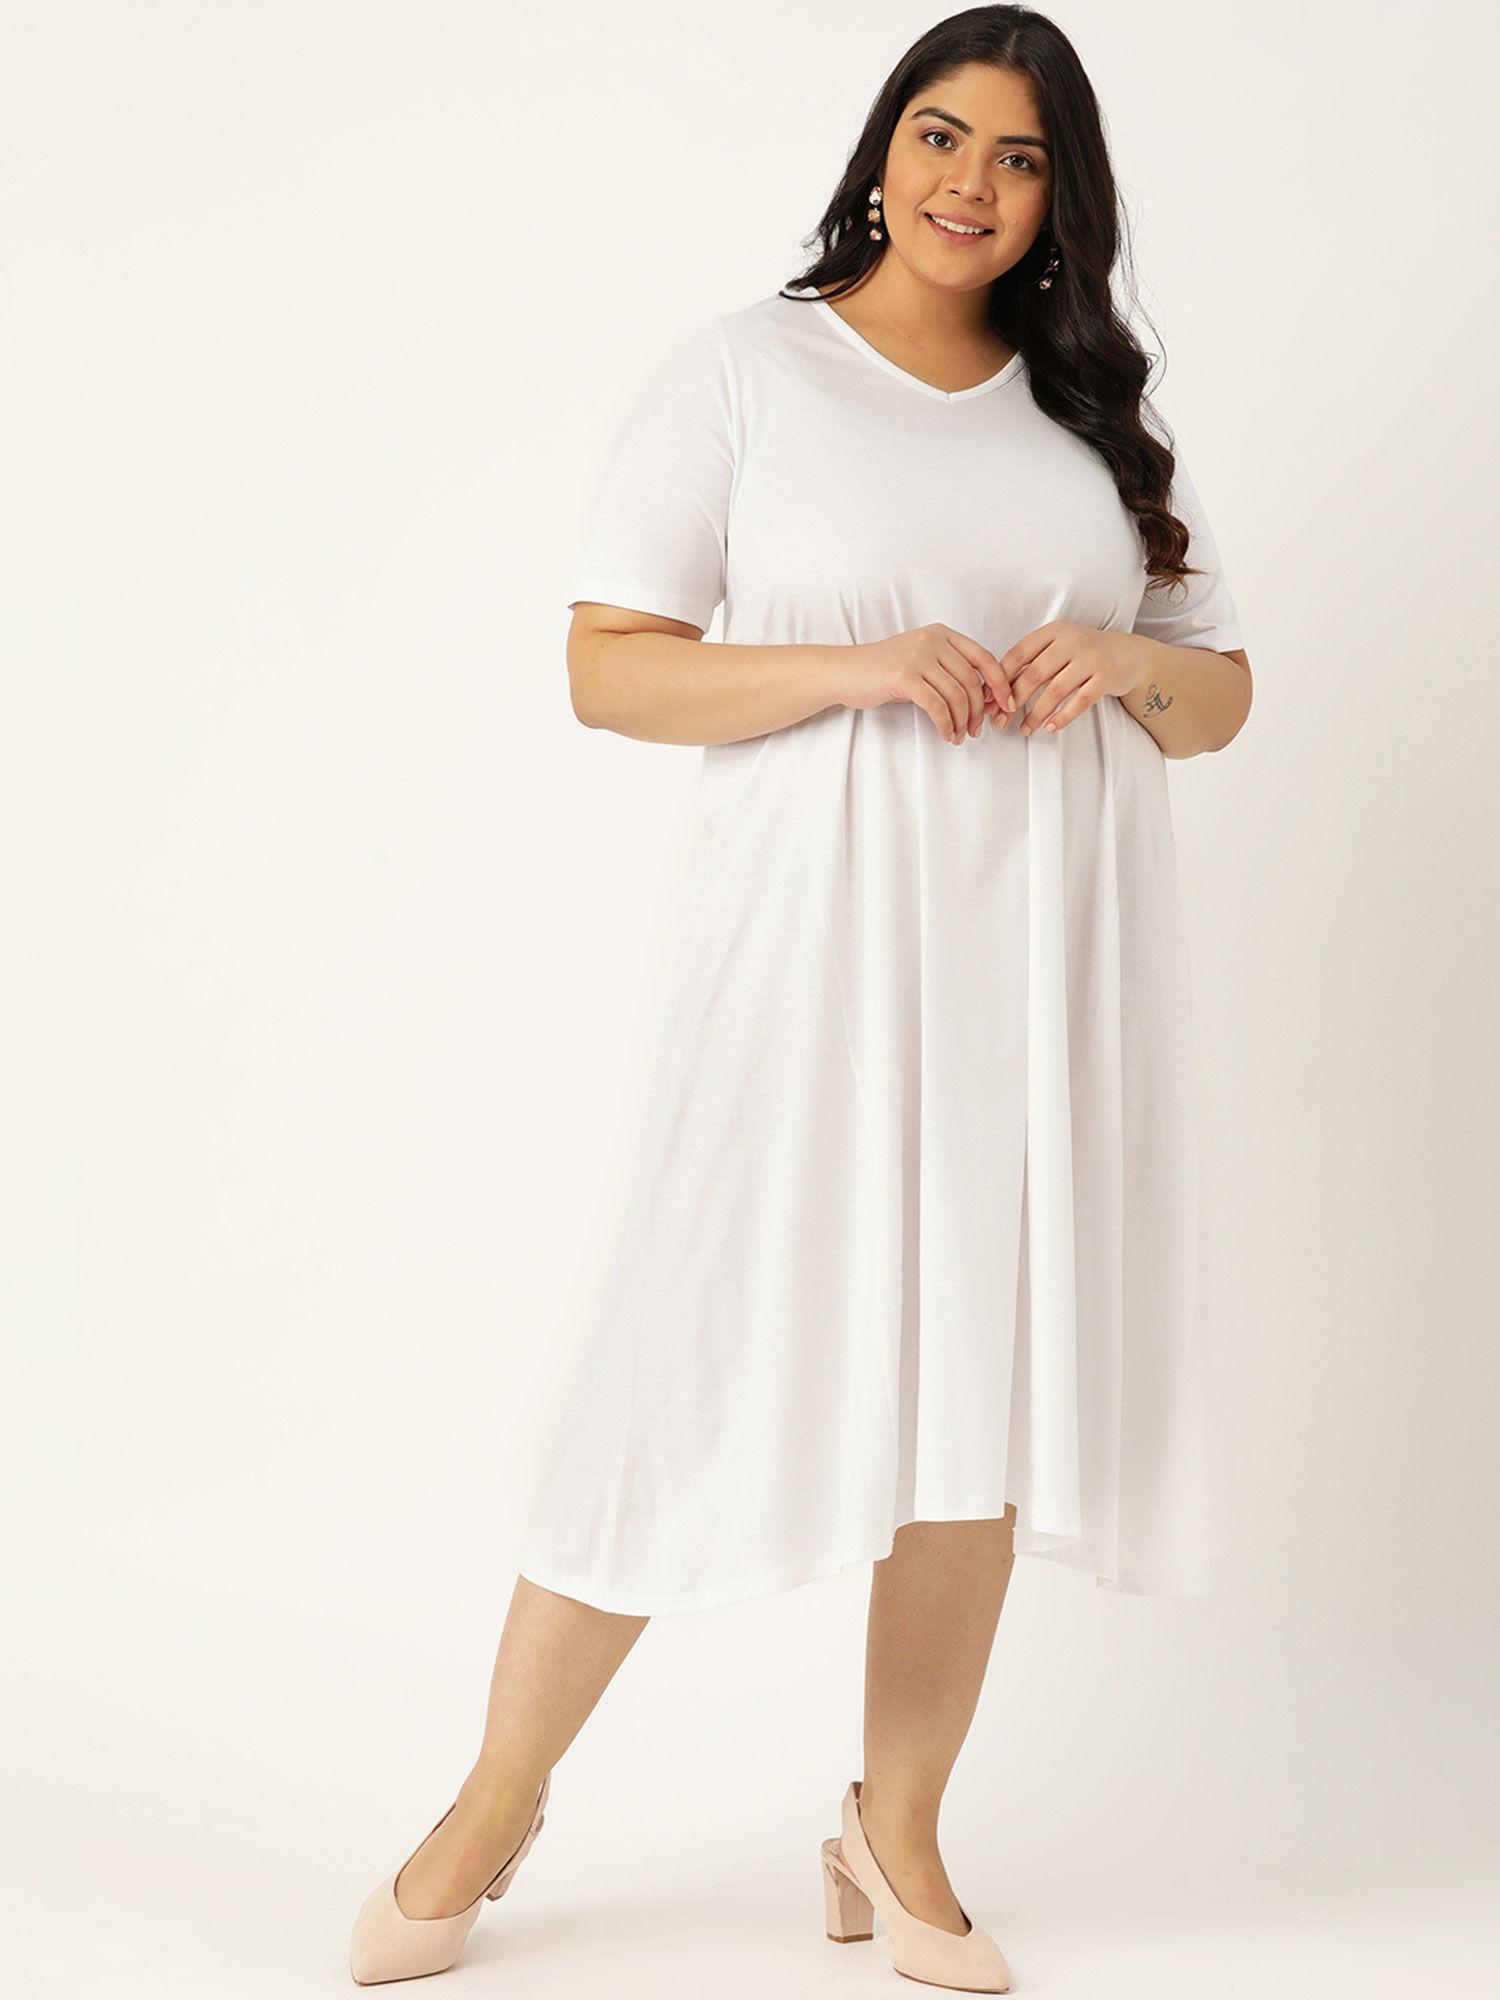 women's white solid color v-neck cotton a-line dress